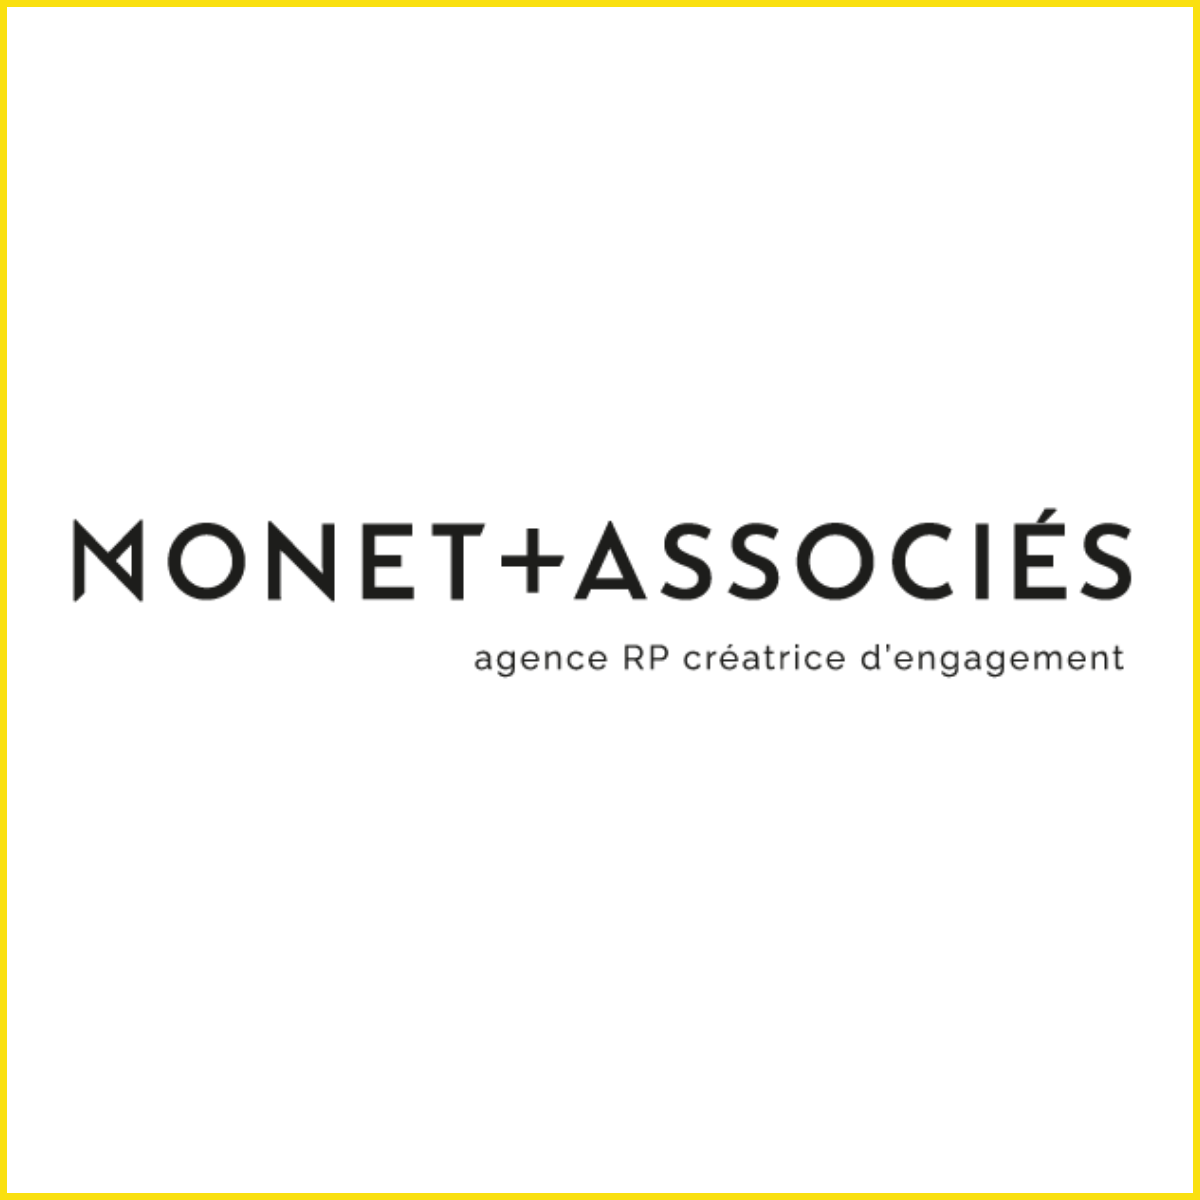 Monet et Associes Metrixx